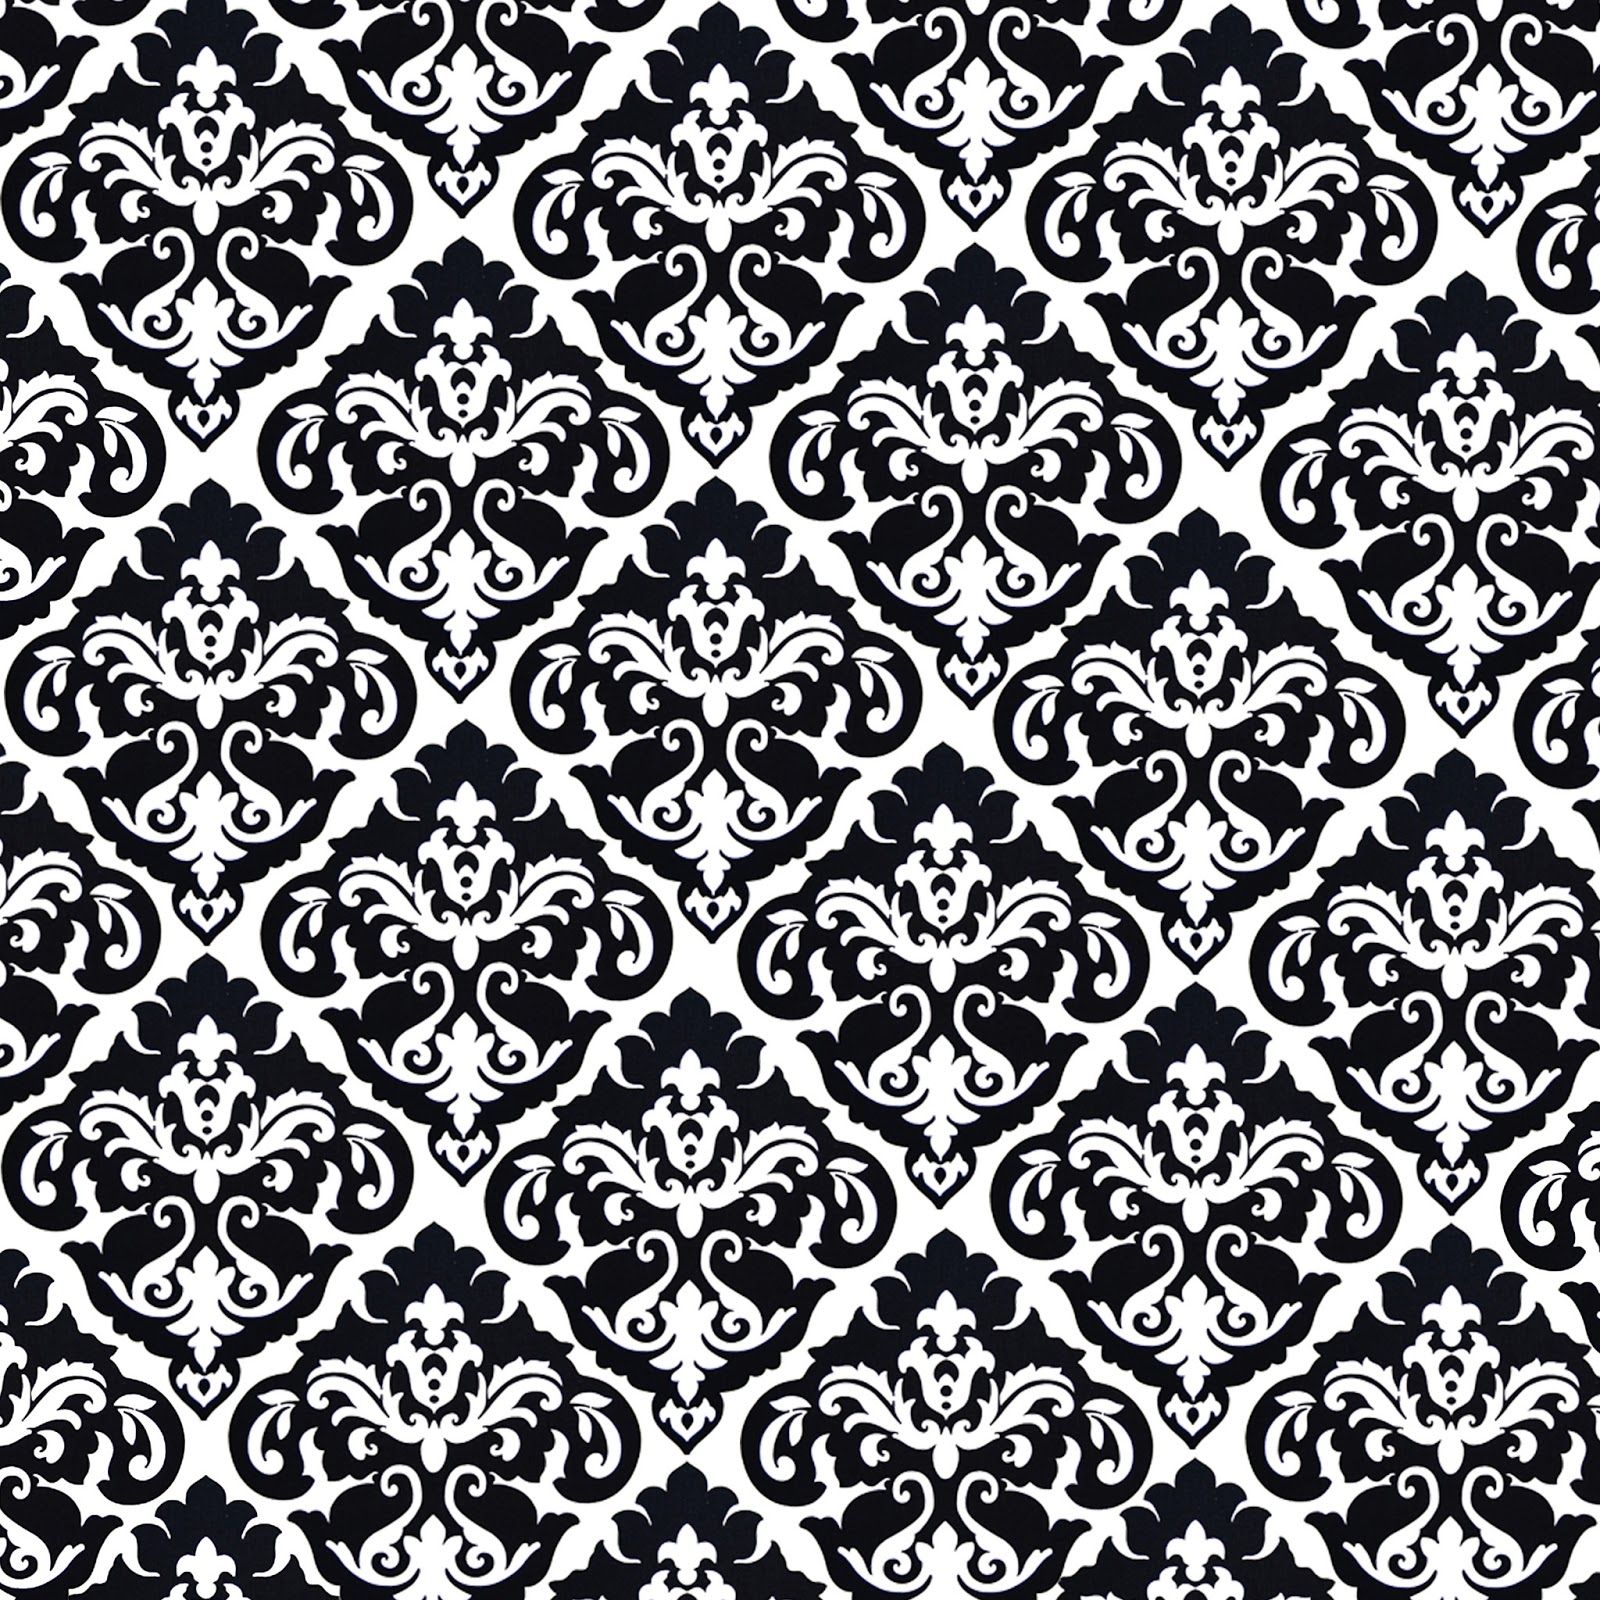 46+] Black and White Wallpaper Patterns - WallpaperSafari